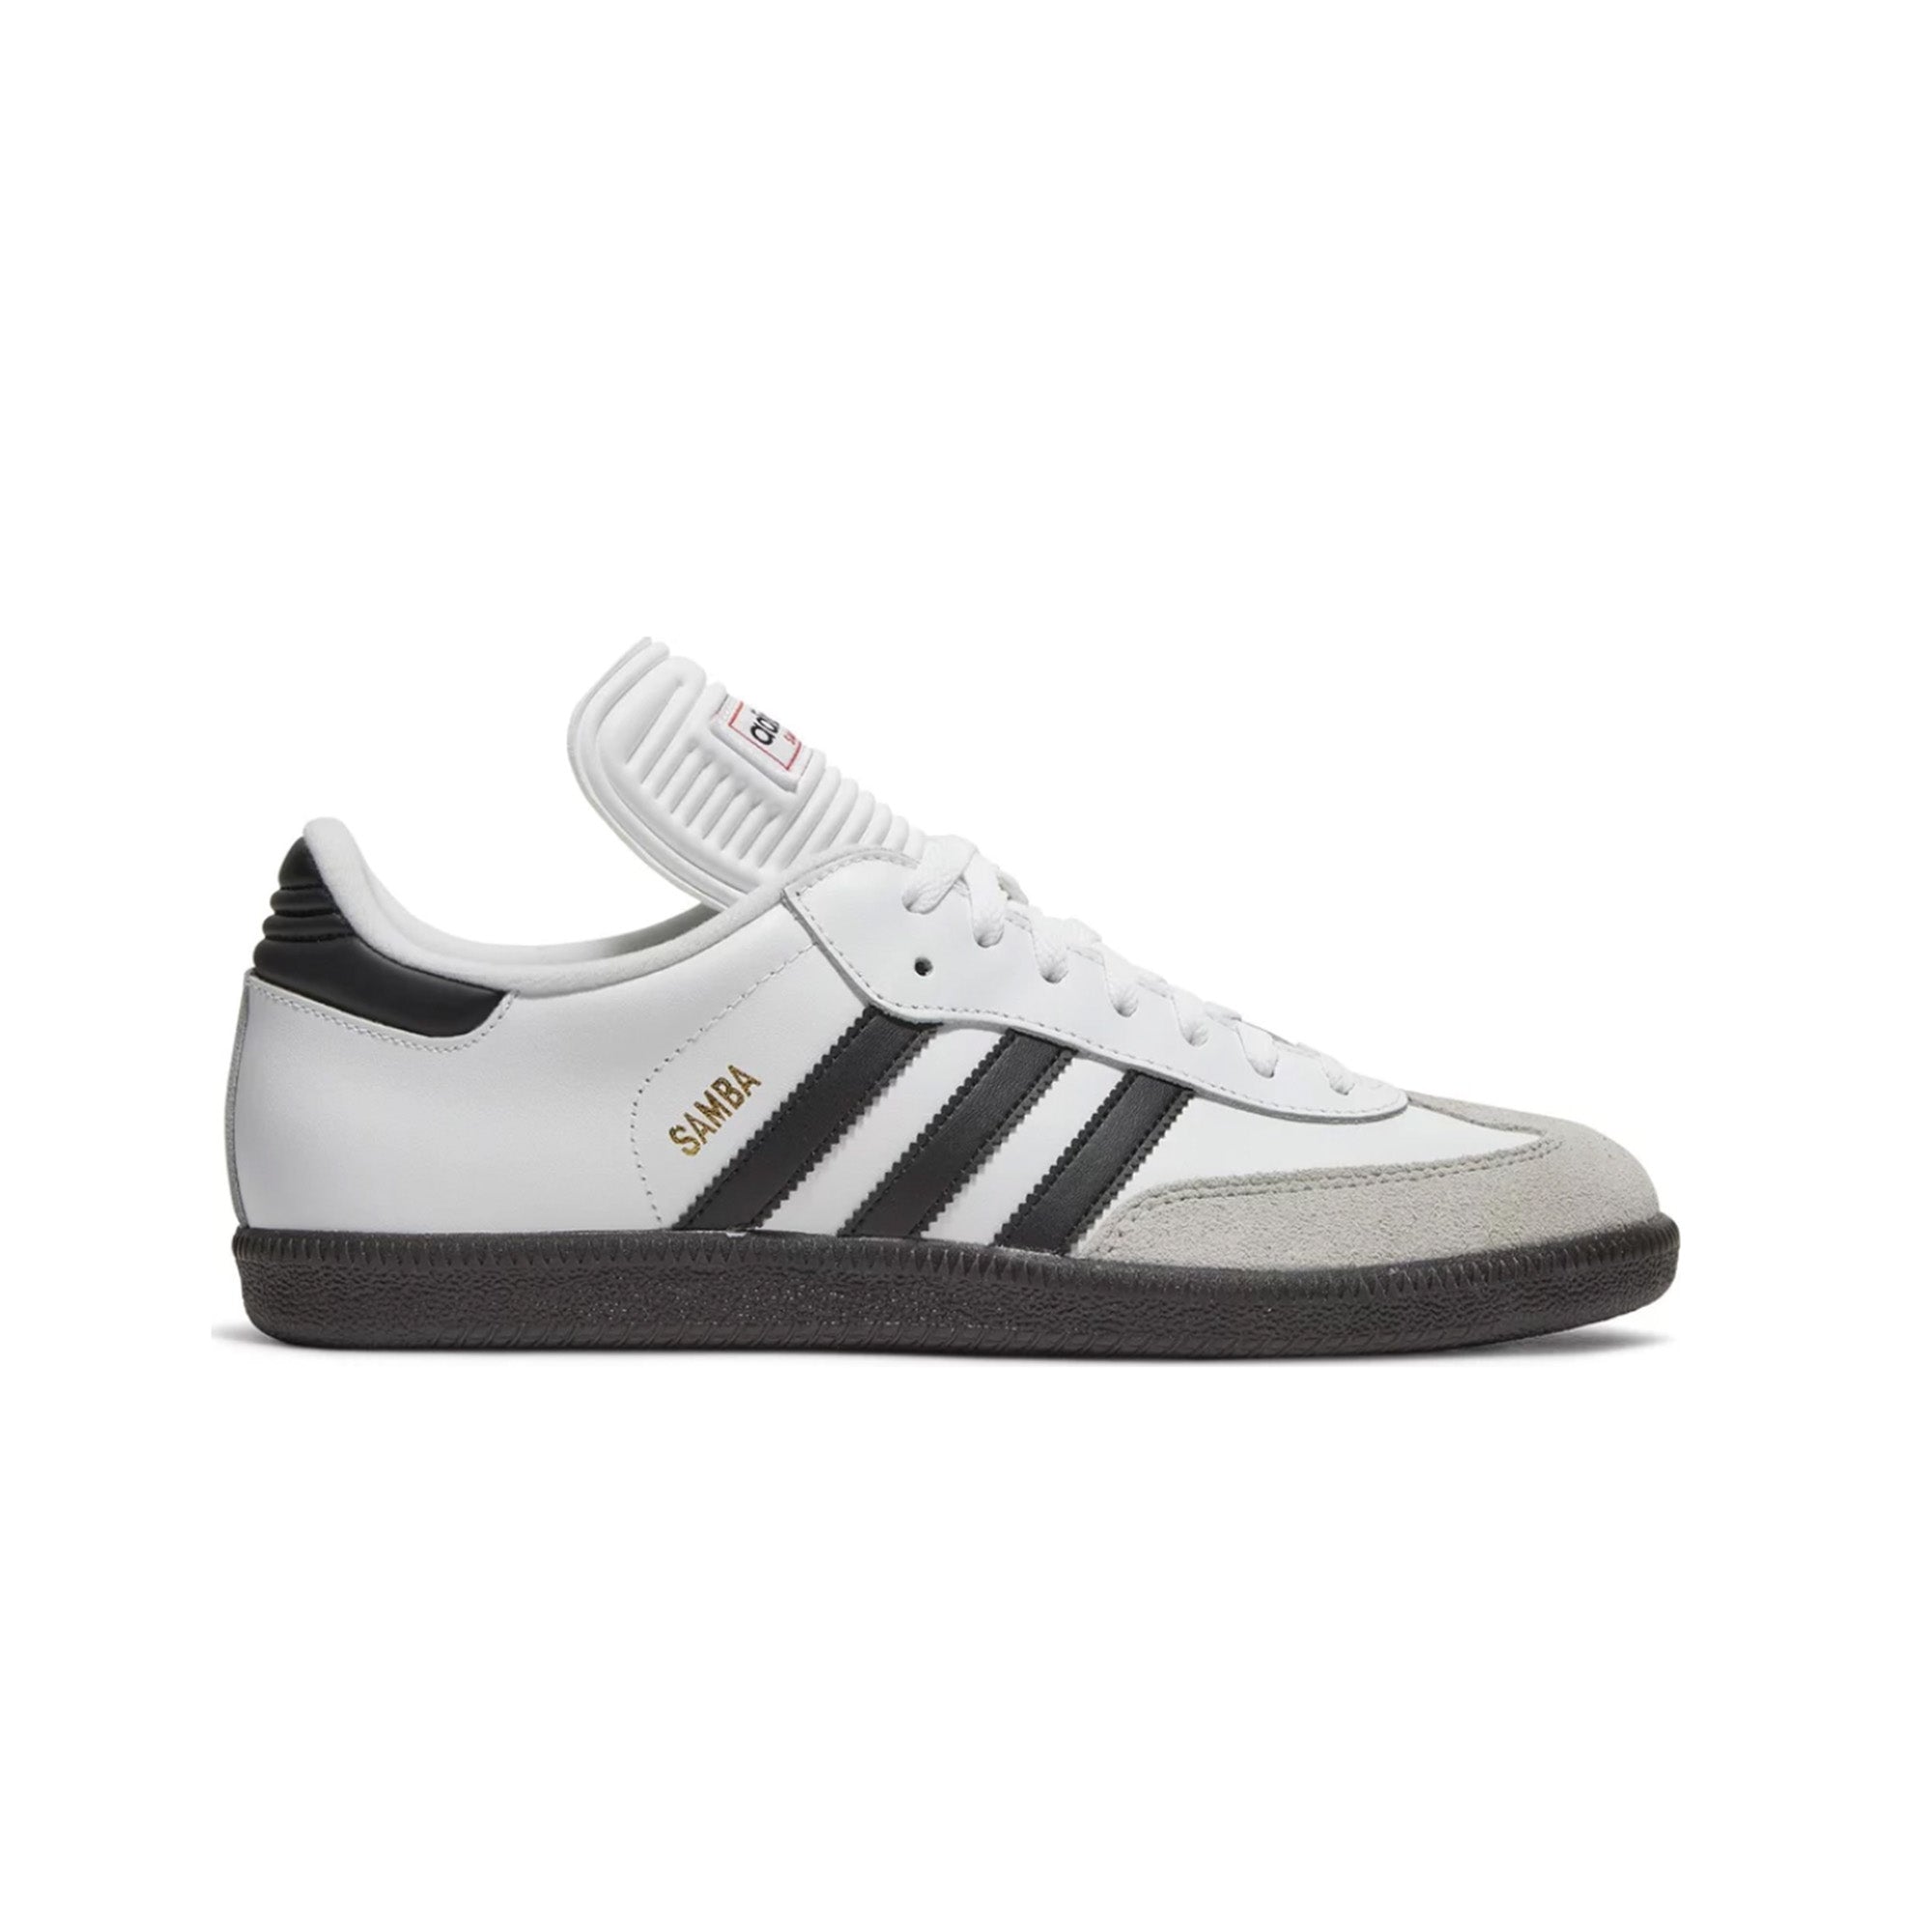 Adidas Samba - Classic White